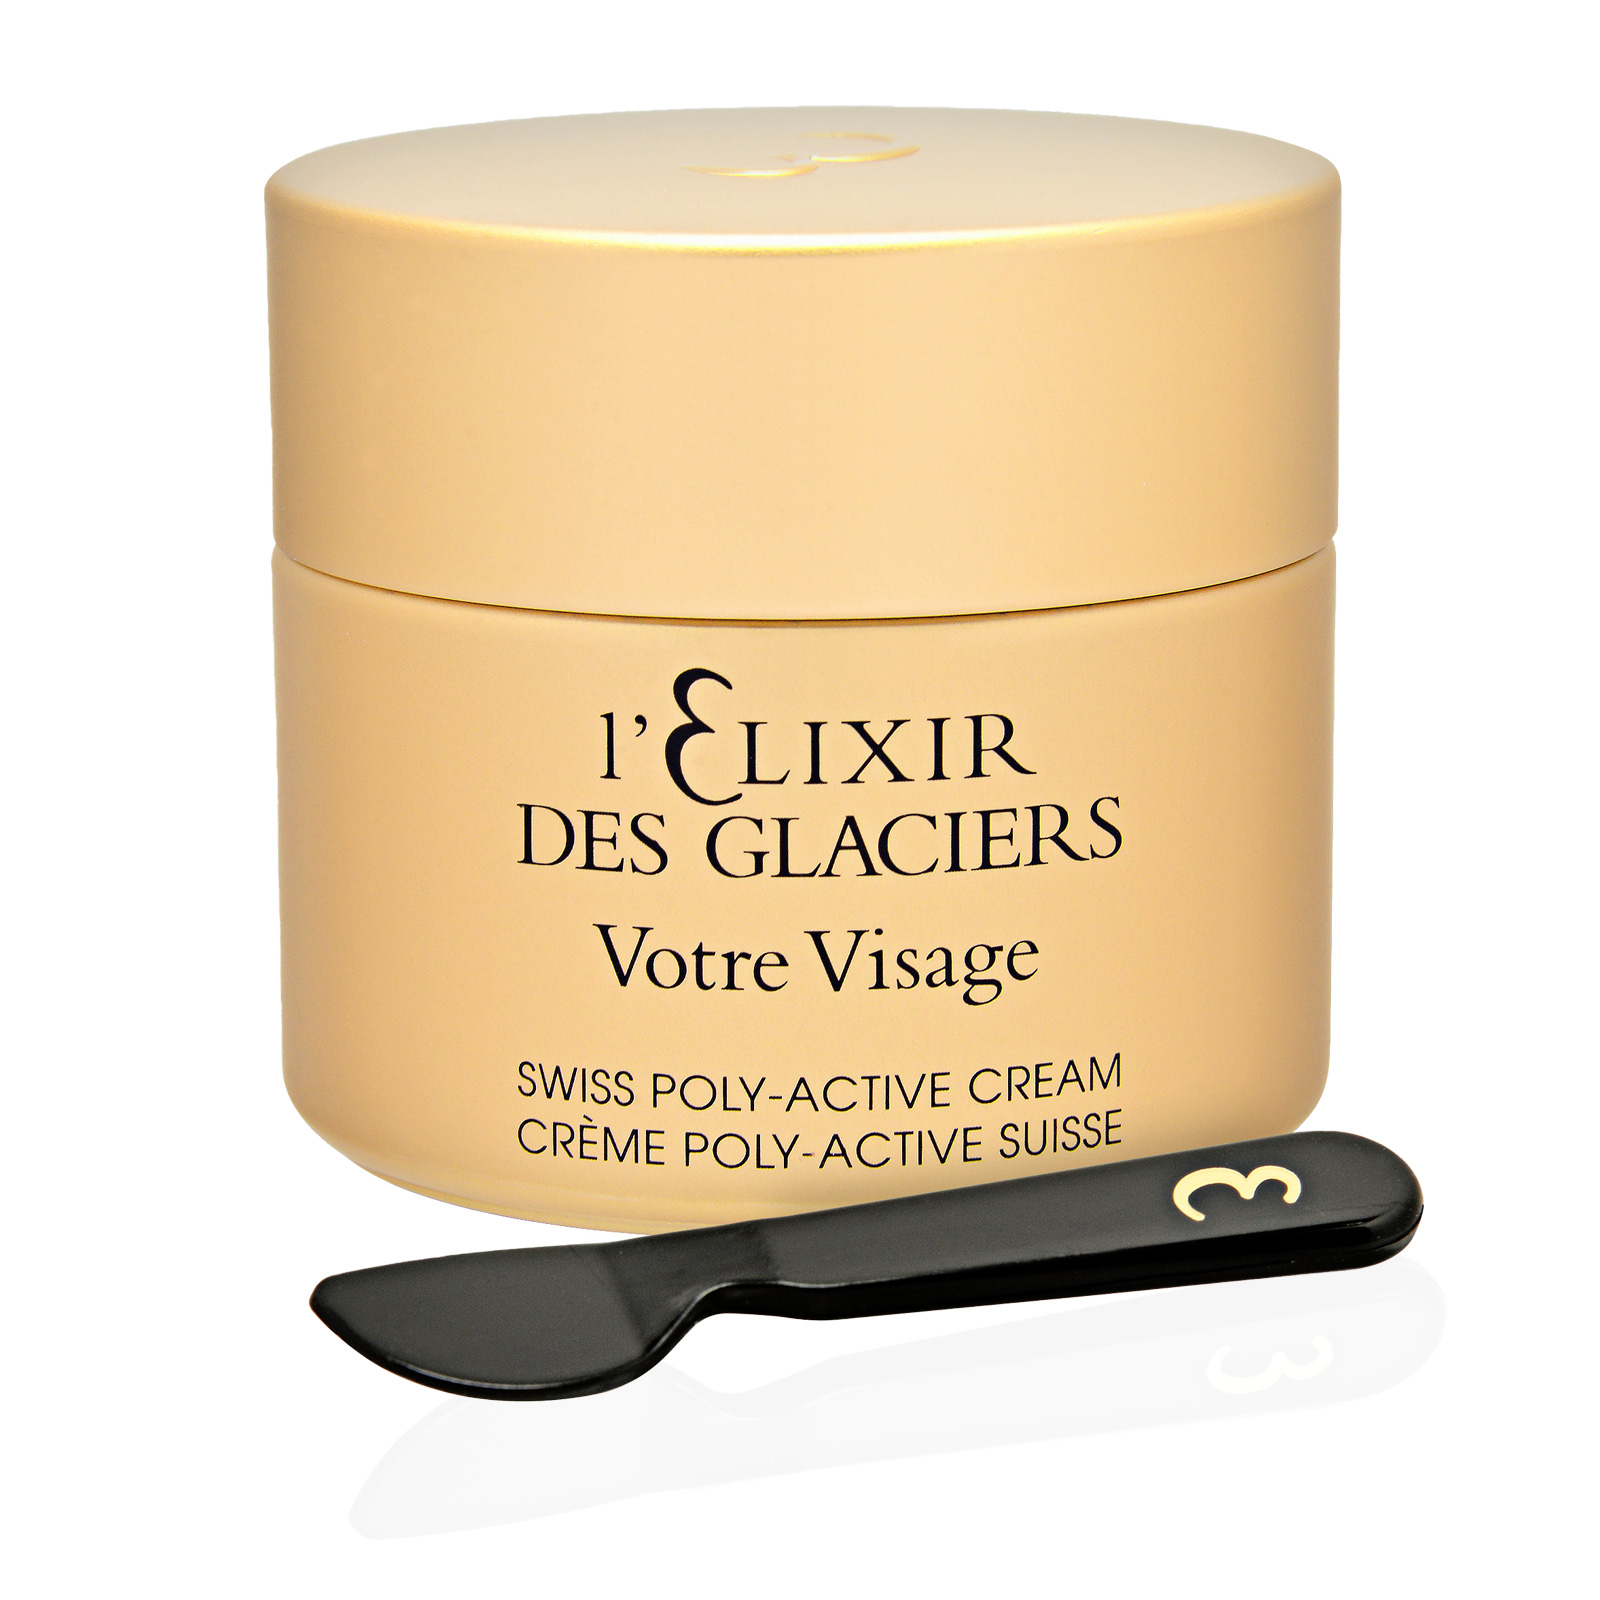 L' Elixir Des Glaciers Votre Visage Swiss Poly-Active Cream